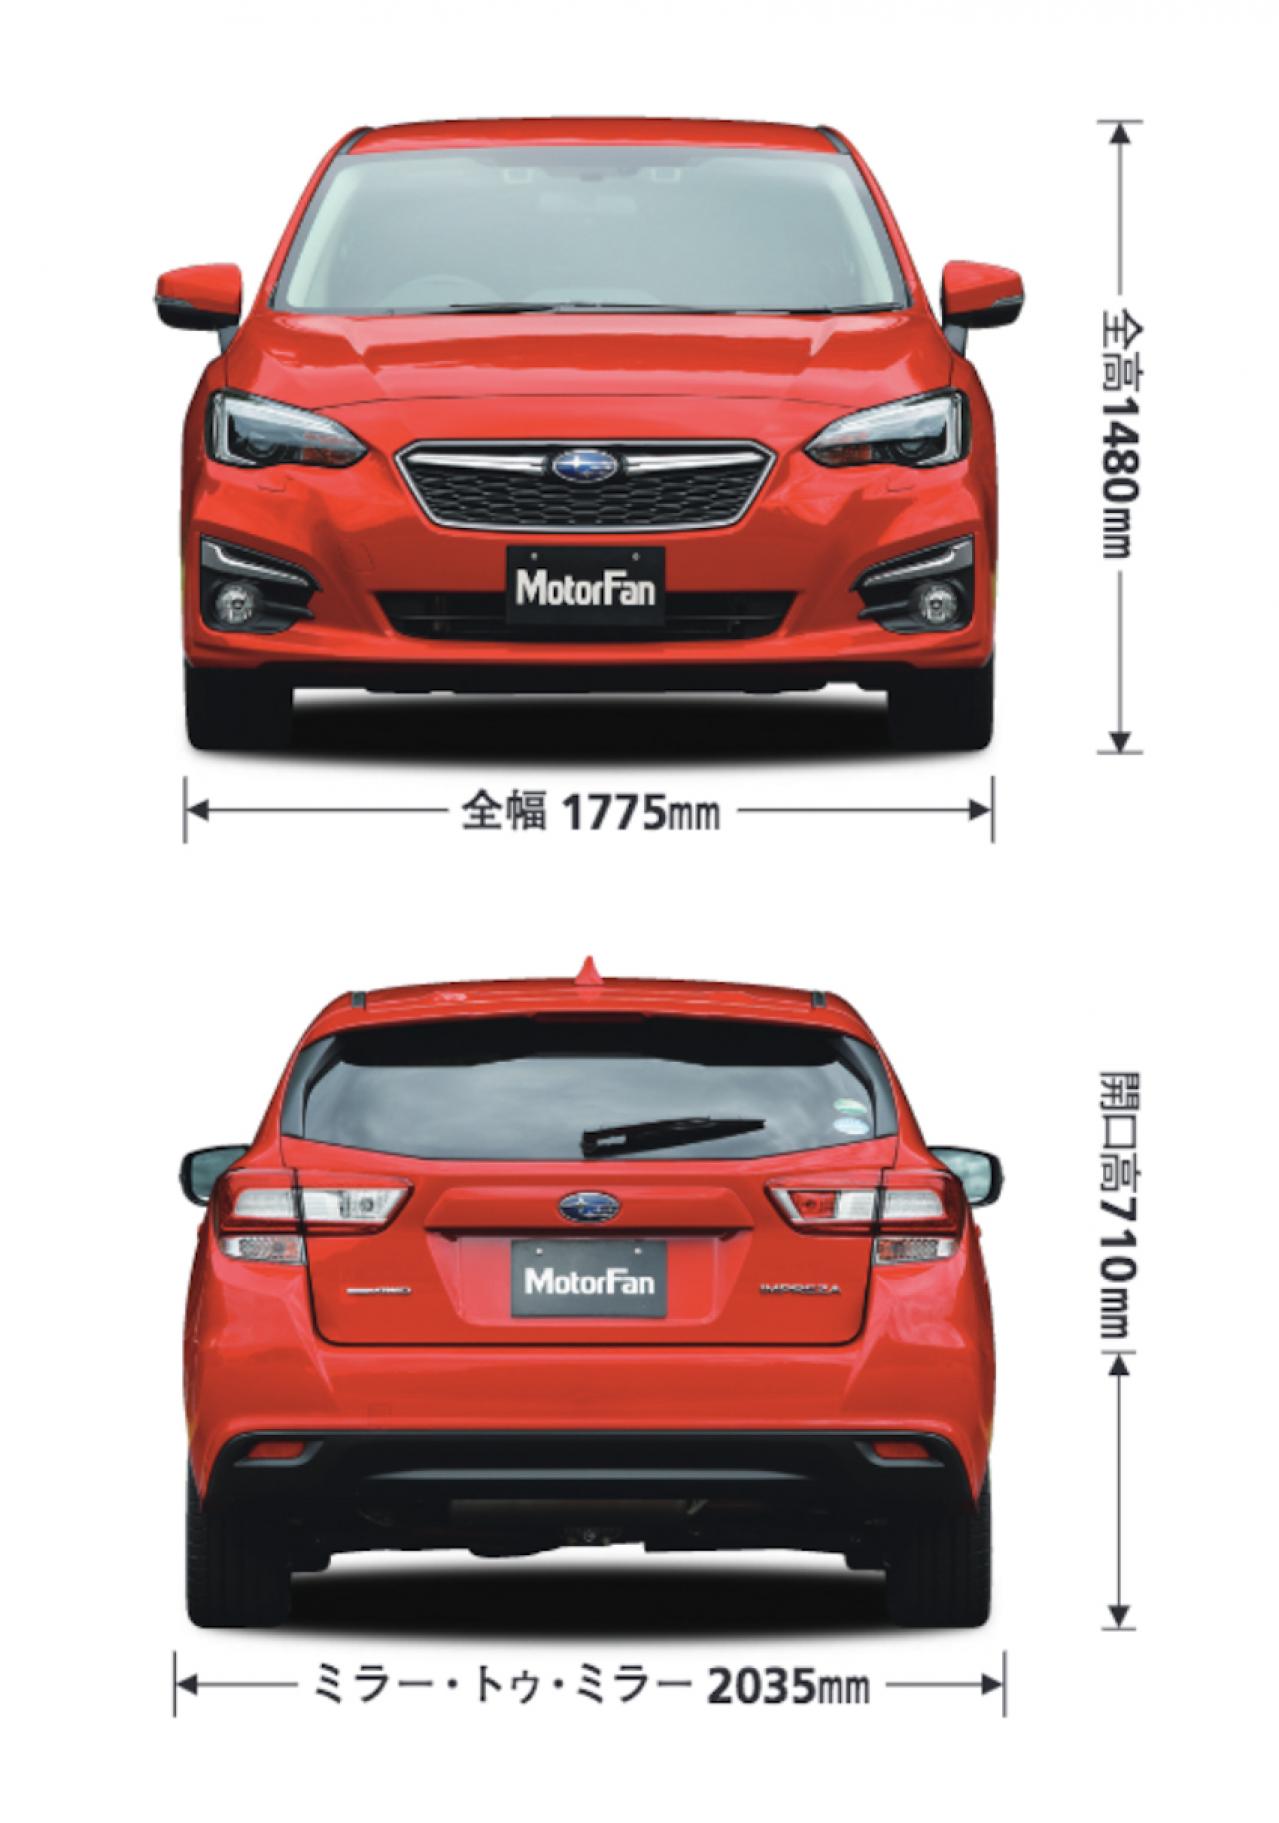 スバル Subaru インプレッサスポーツ ハッチバック 新型 自動車カタログ 価格 試乗インプレ 技術開発 Motor Fan モーターファン